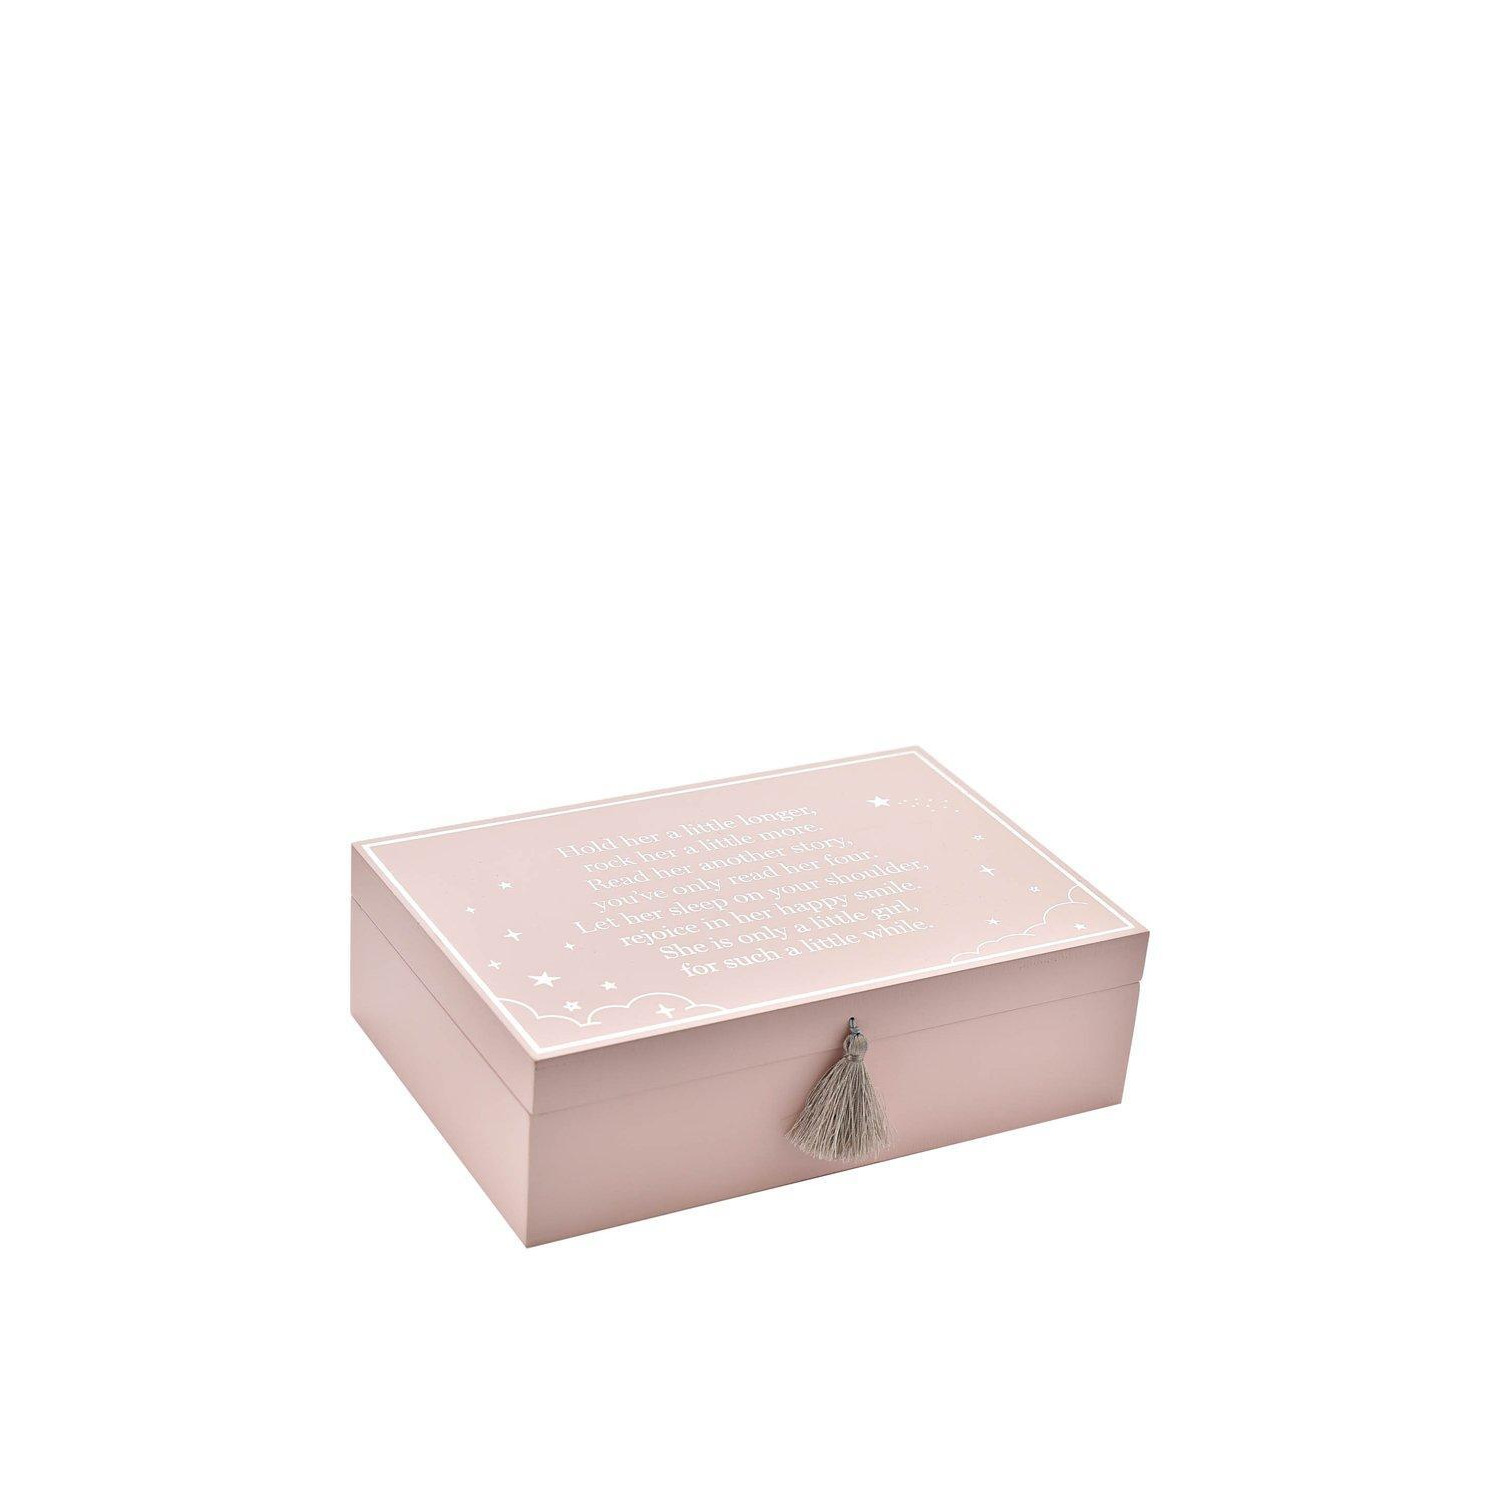 Wooden Keepsake Box Pink - image 1